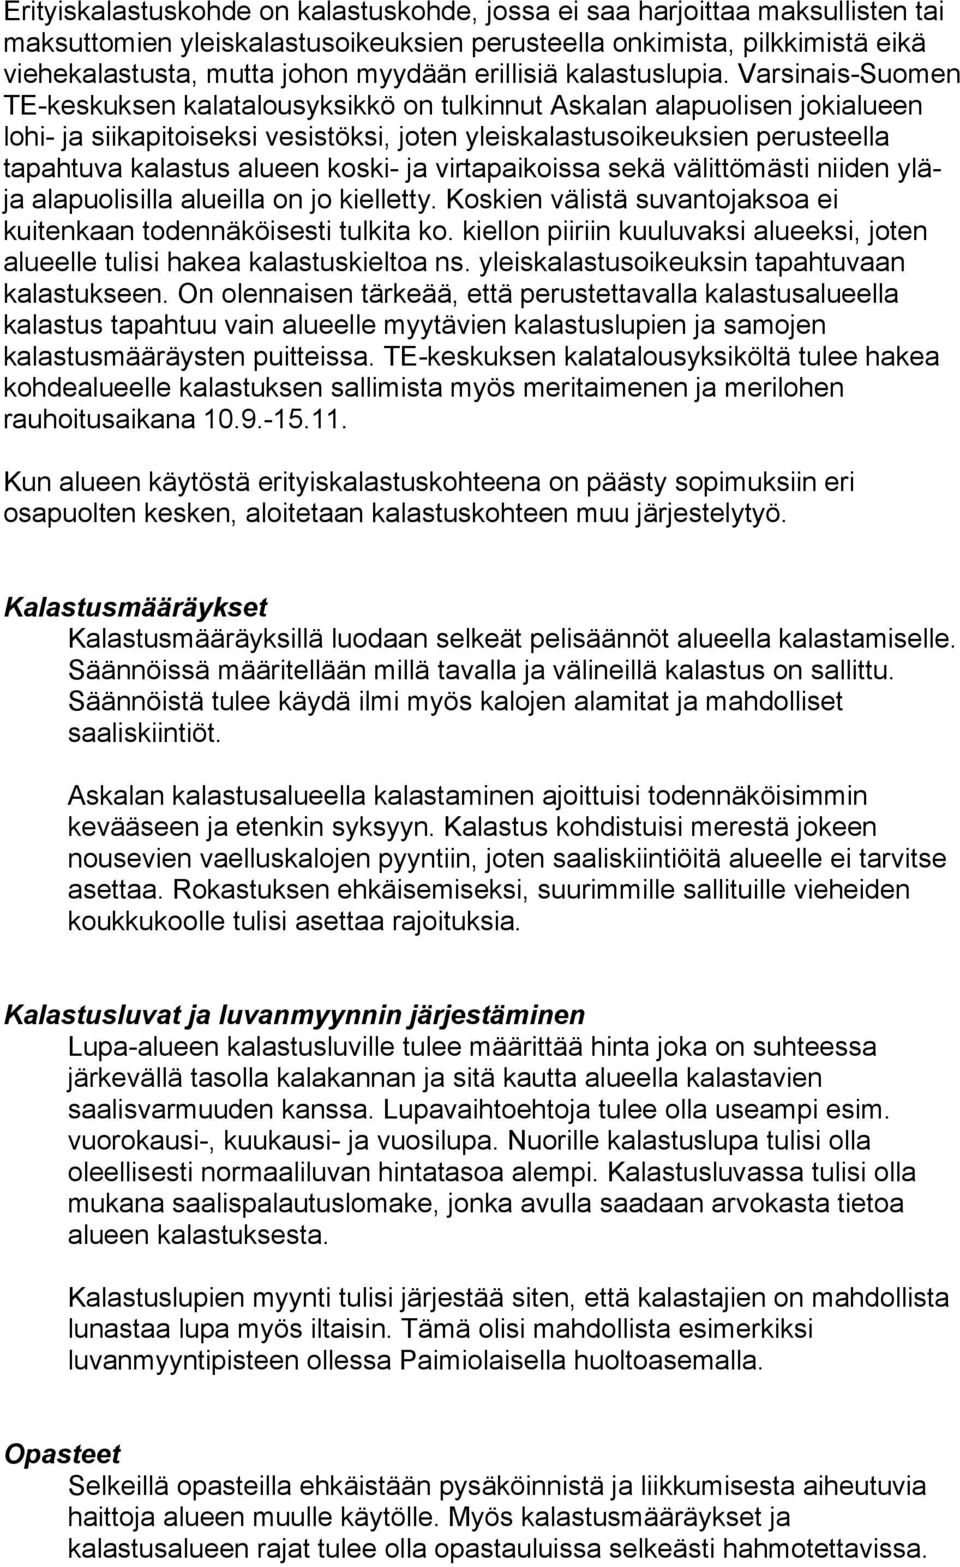 Varsinais-Suomen TE-keskuksen kalatalousyksikkö on tulkinnut Askalan alapuolisen jokialueen lohi- ja siikapitoiseksi vesistöksi, joten yleiskalastusoikeuksien perusteella tapahtuva kalastus alueen